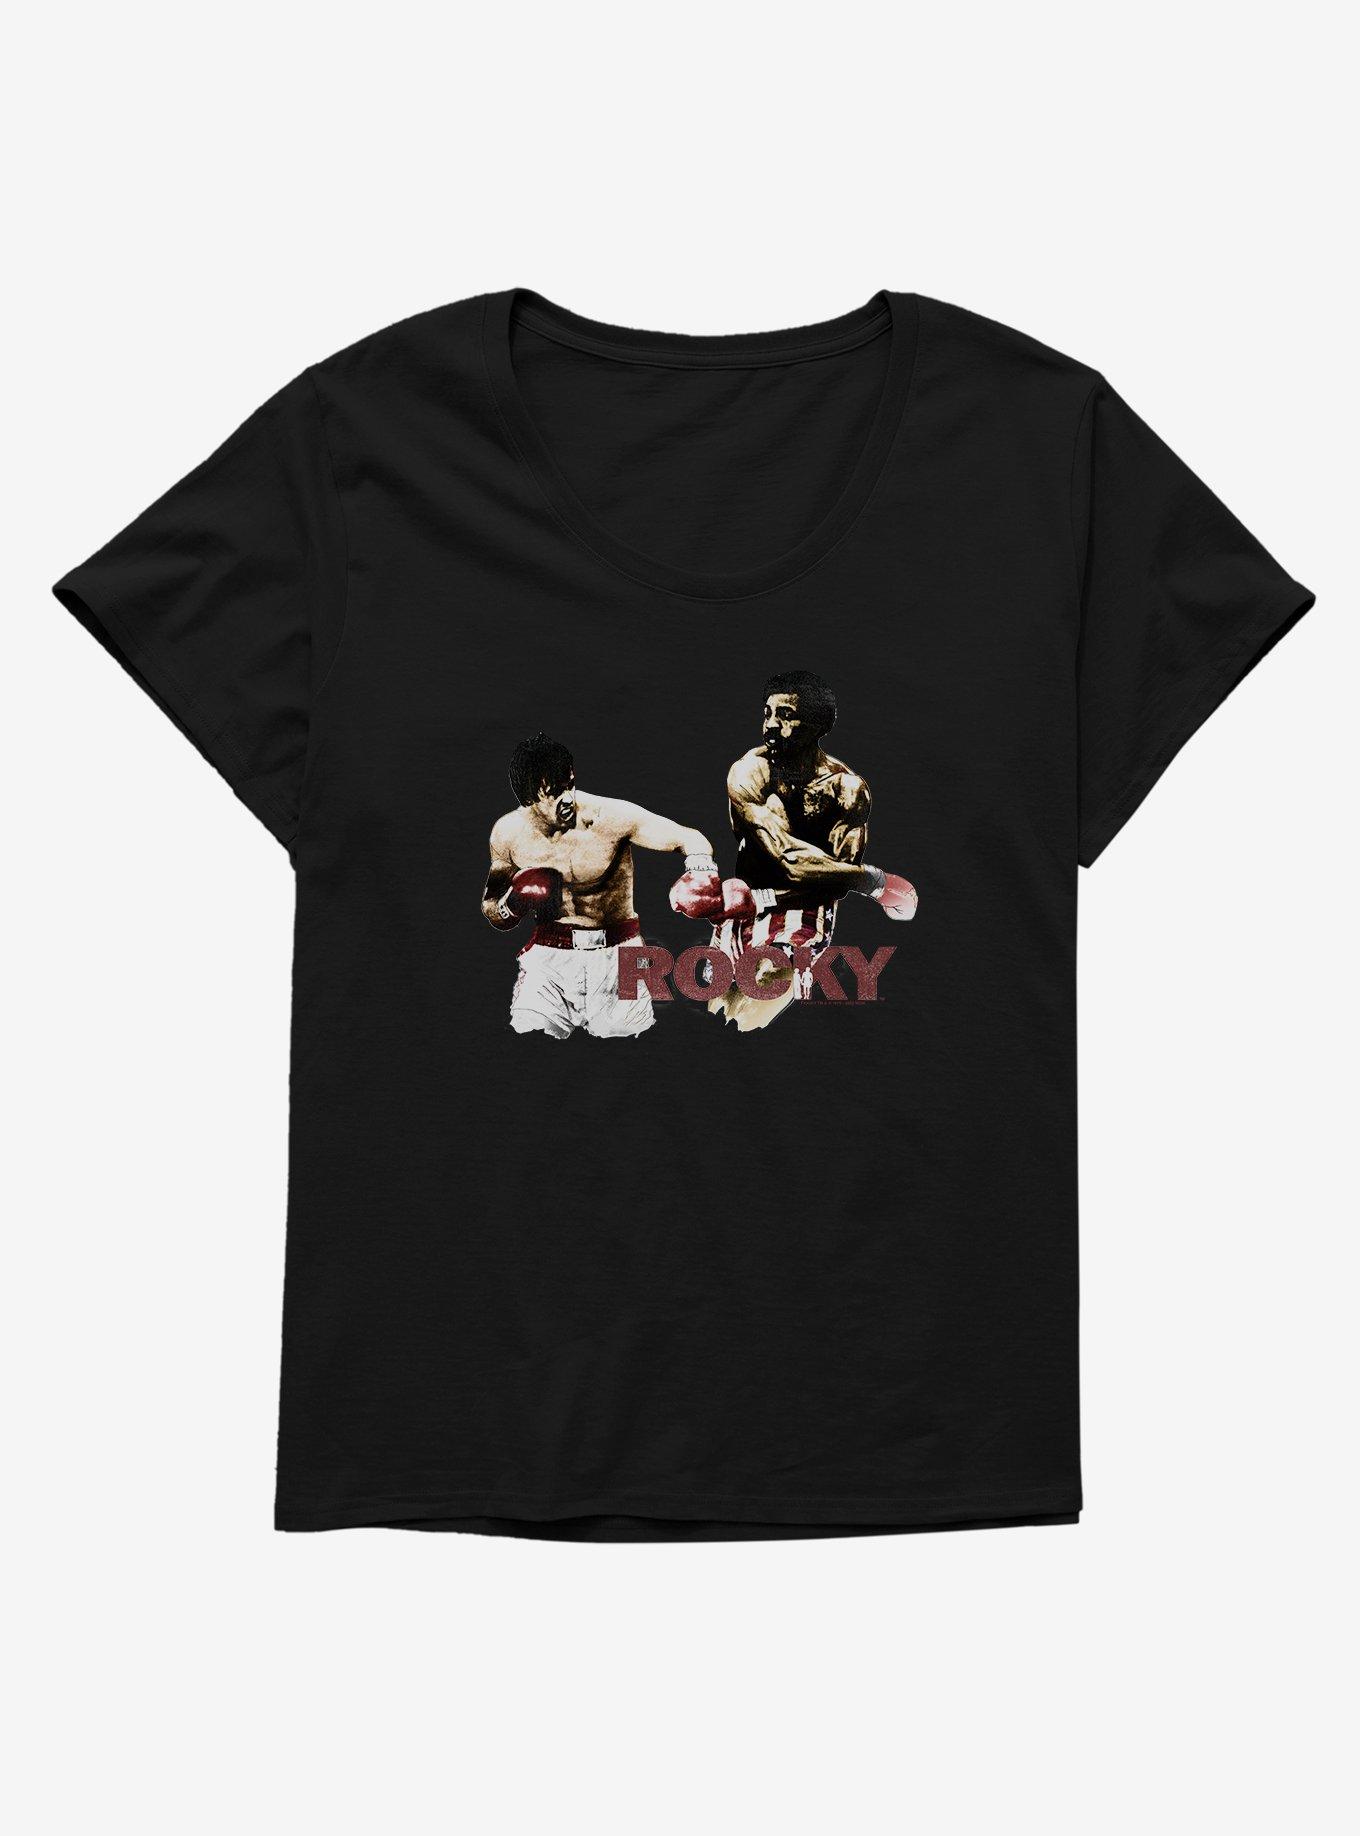 Rocky Vs. Apollo Creed Fight Scene Girls T-Shirt Plus